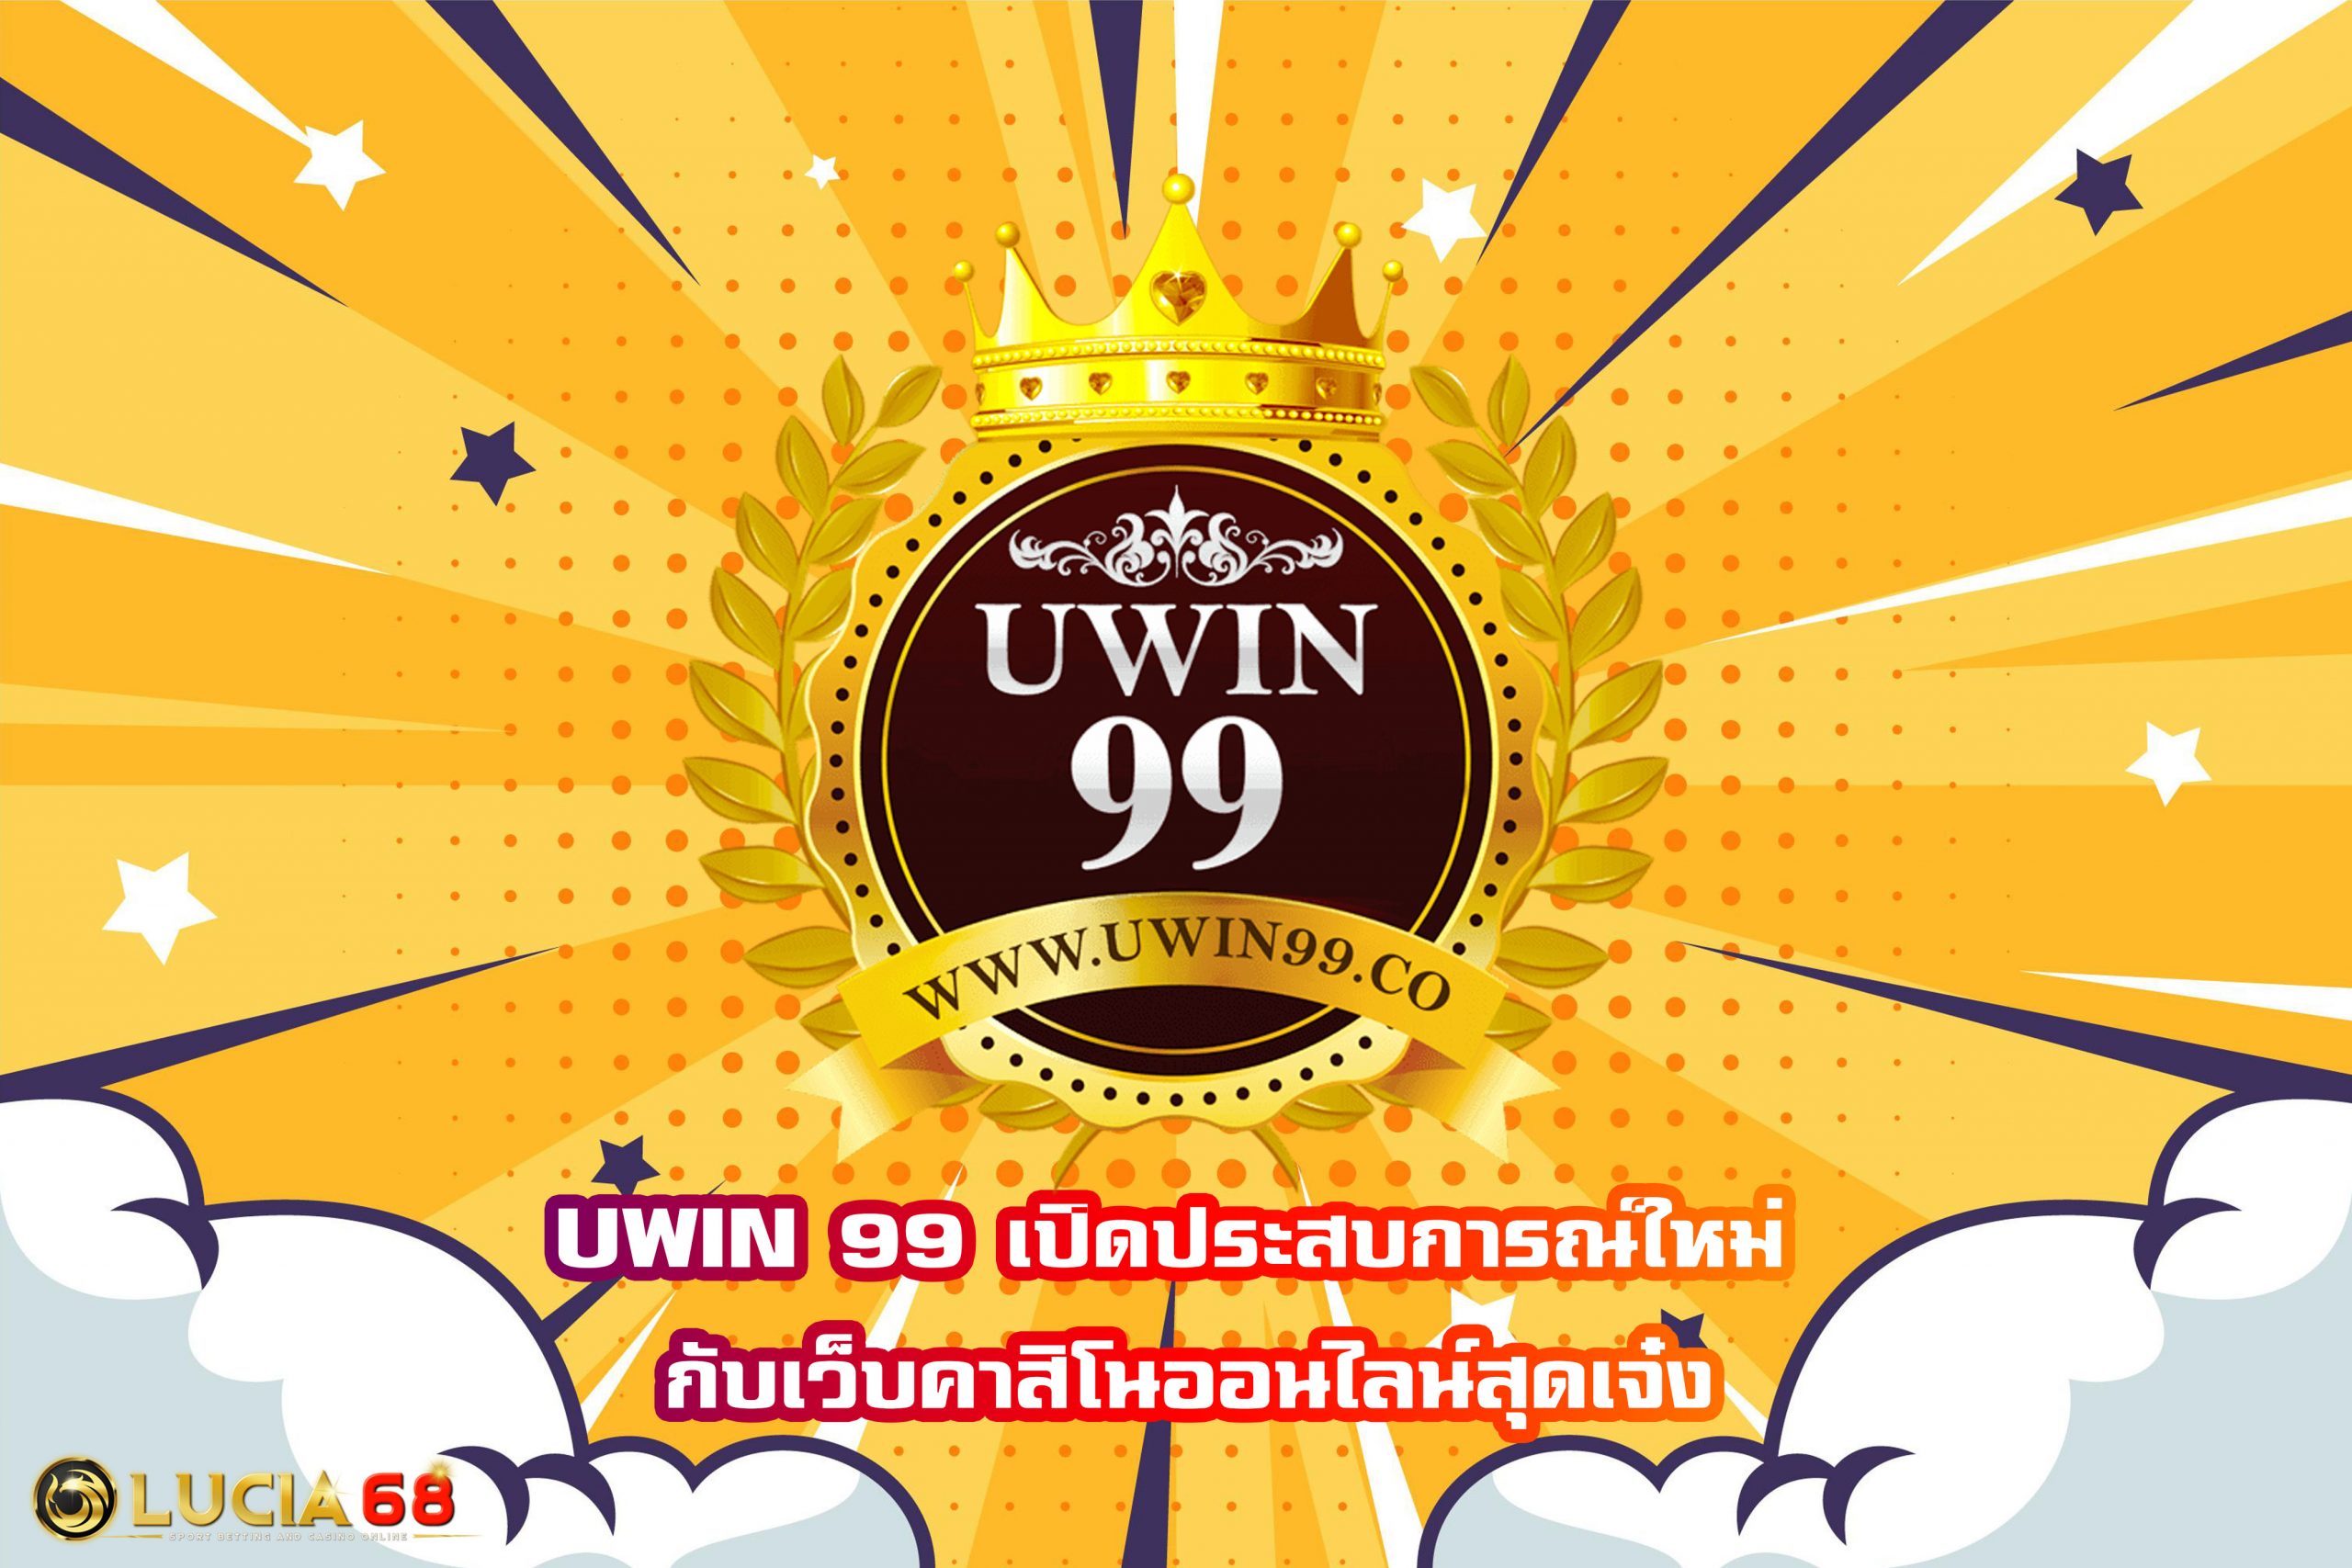 UWIN 99 เปิดประสบการณ์ใหม่ กับเว็บคาสิโนออนไลน์สุดเจ๋ง